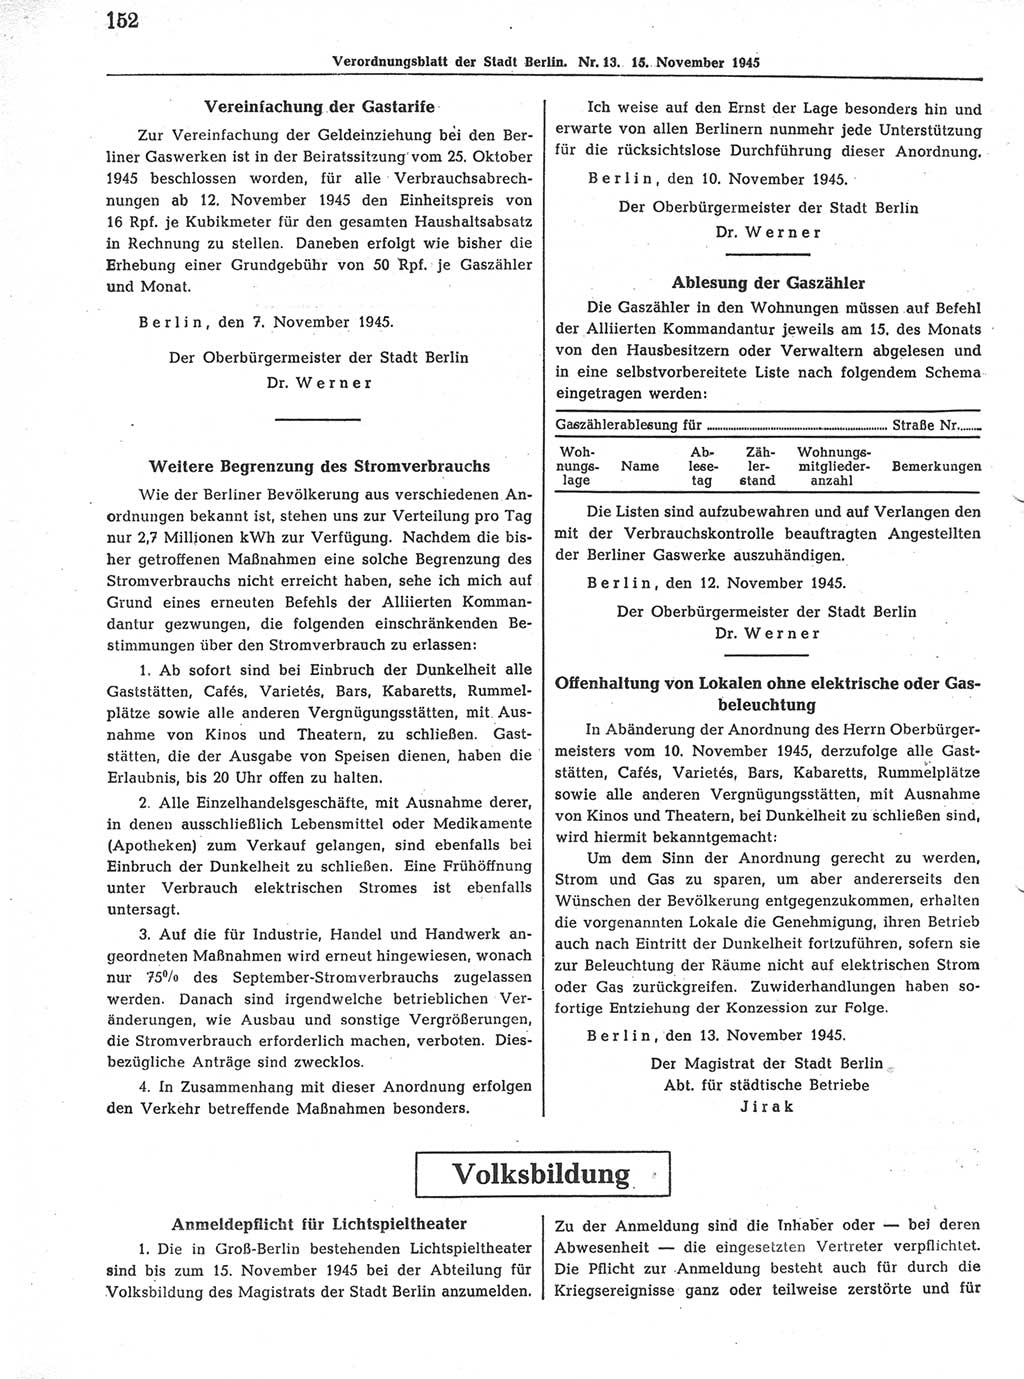 Verordnungsblatt (VOBl.) der Stadt Berlin 1945, Seite 152 (VOBl. Bln. 1945, S. 152)